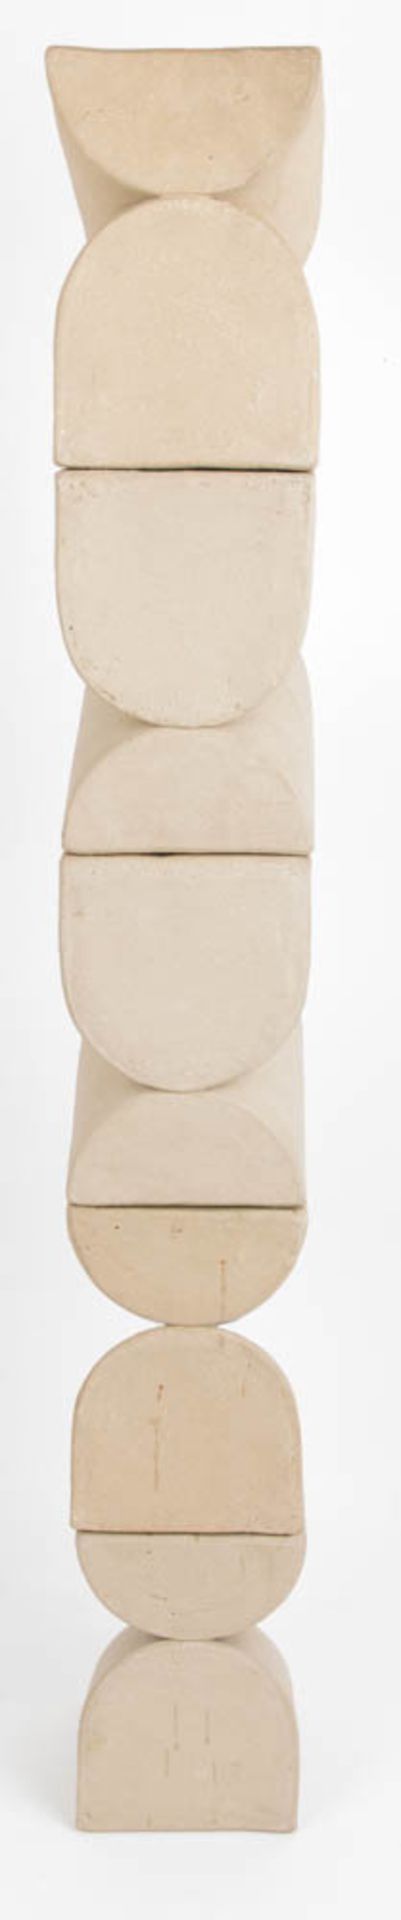 Elisabeth Köhncke, Skulptur aus fünf formgleichen, kubischen Formen, Ton, 20. Jh.